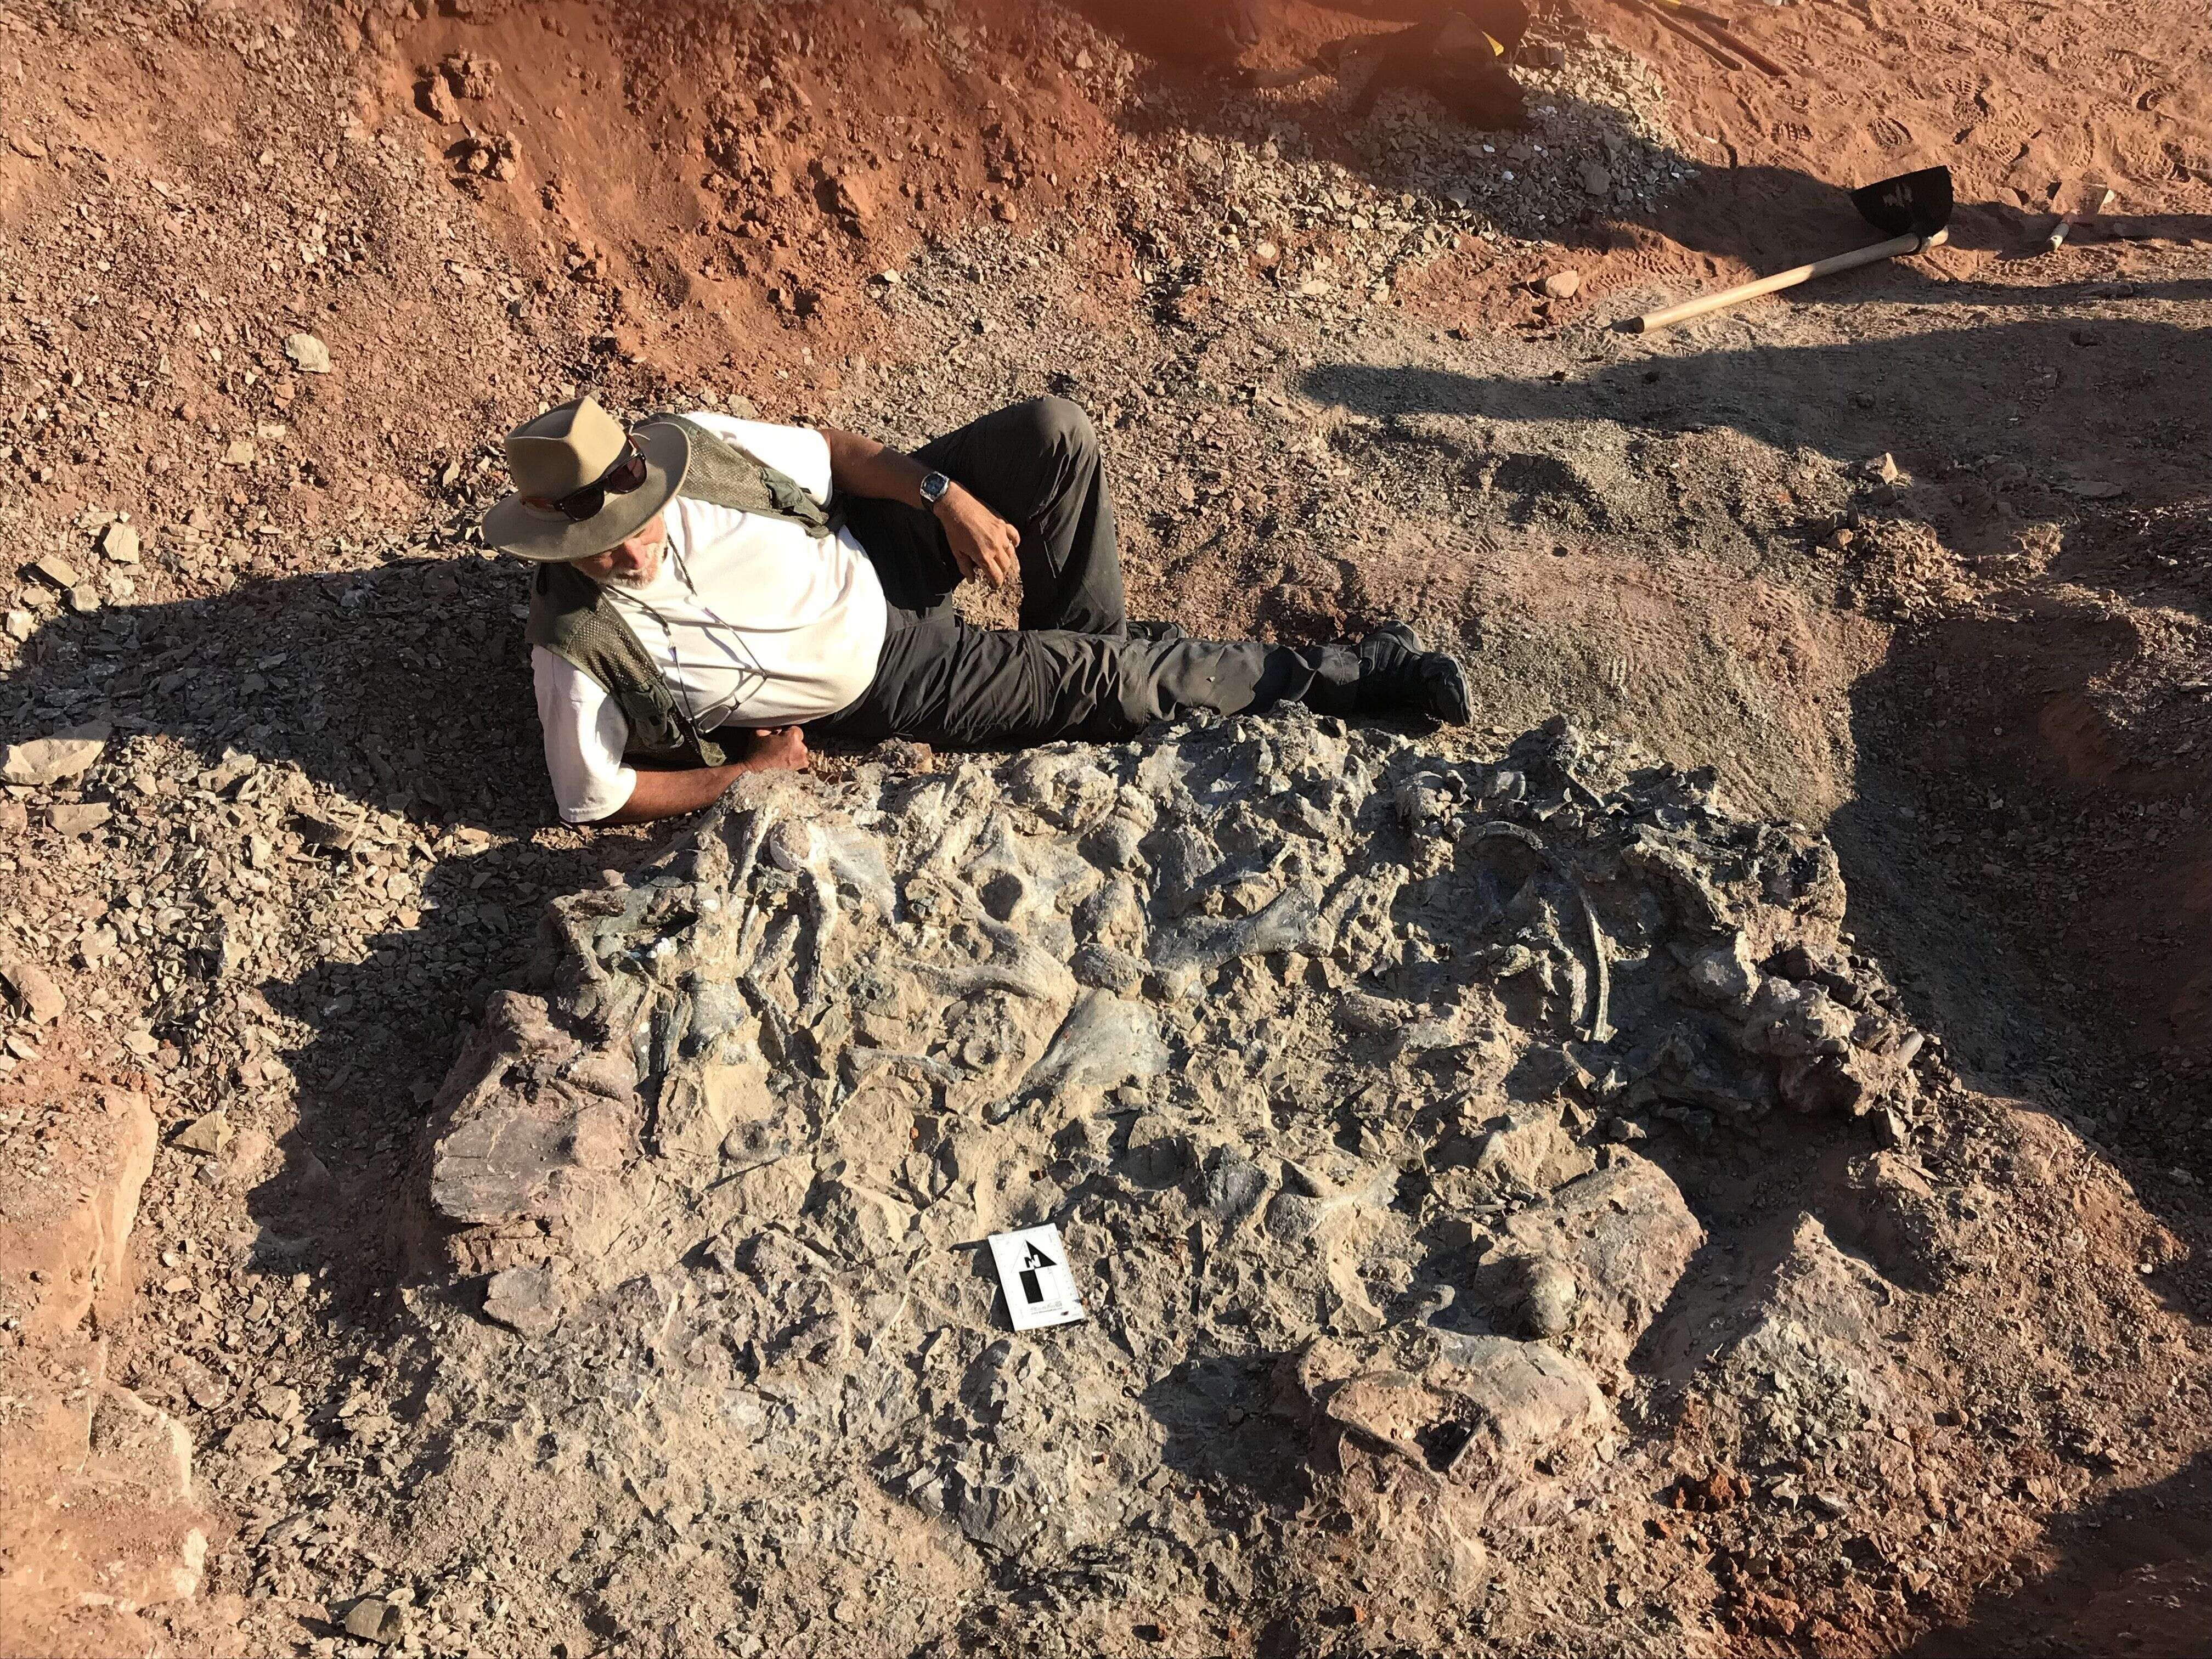 Ricardo Martinez allongé à côté de l'amas de fossiles. Les scientifiques cherchent encore à connaître la raison d'un gisement aussi concentré à cet endroit précis.